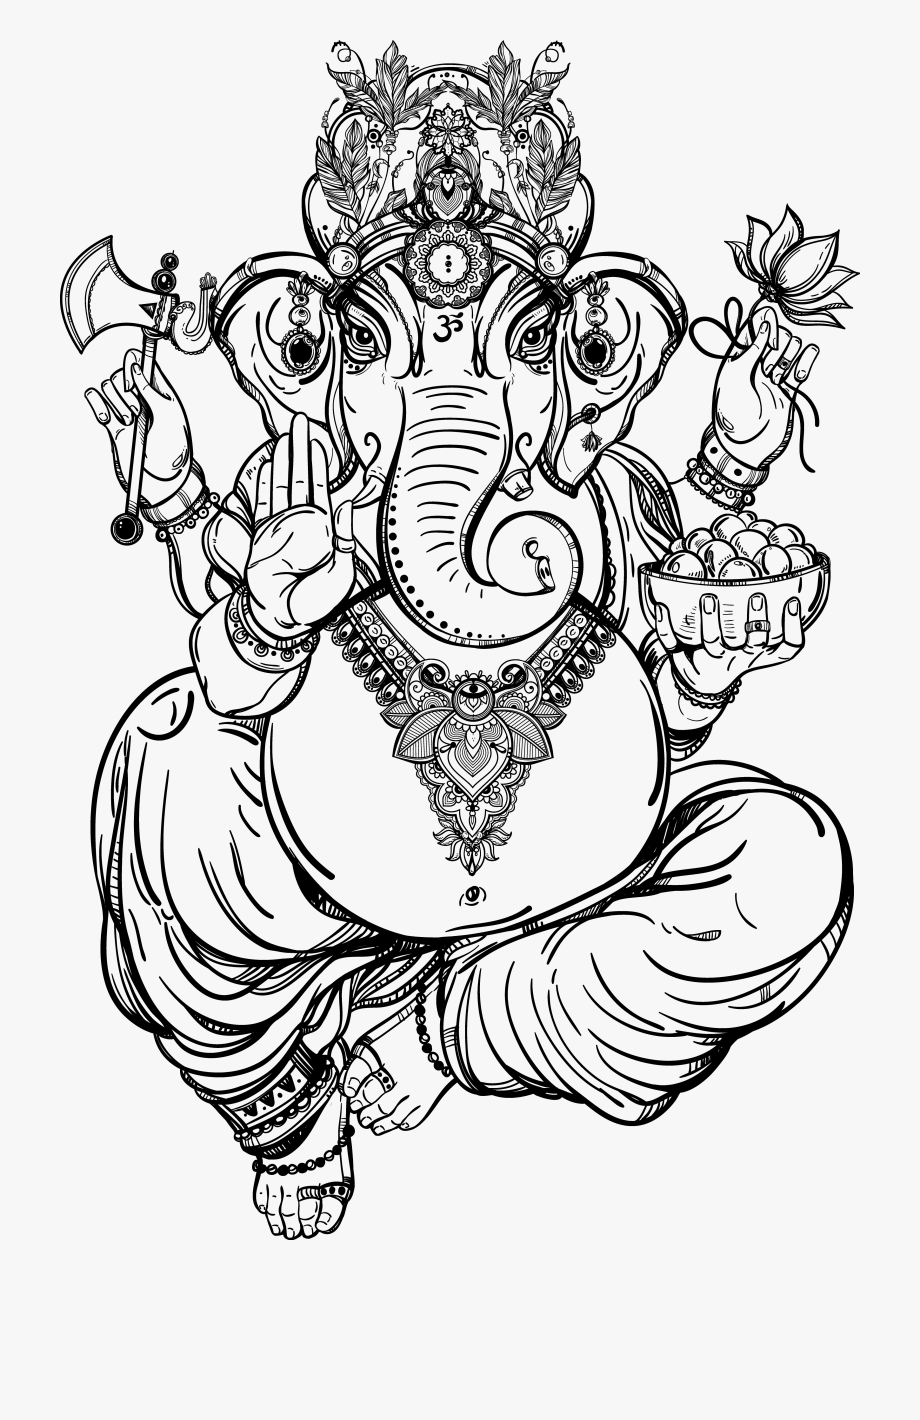 Hindu God Drawing - Drawing Skill